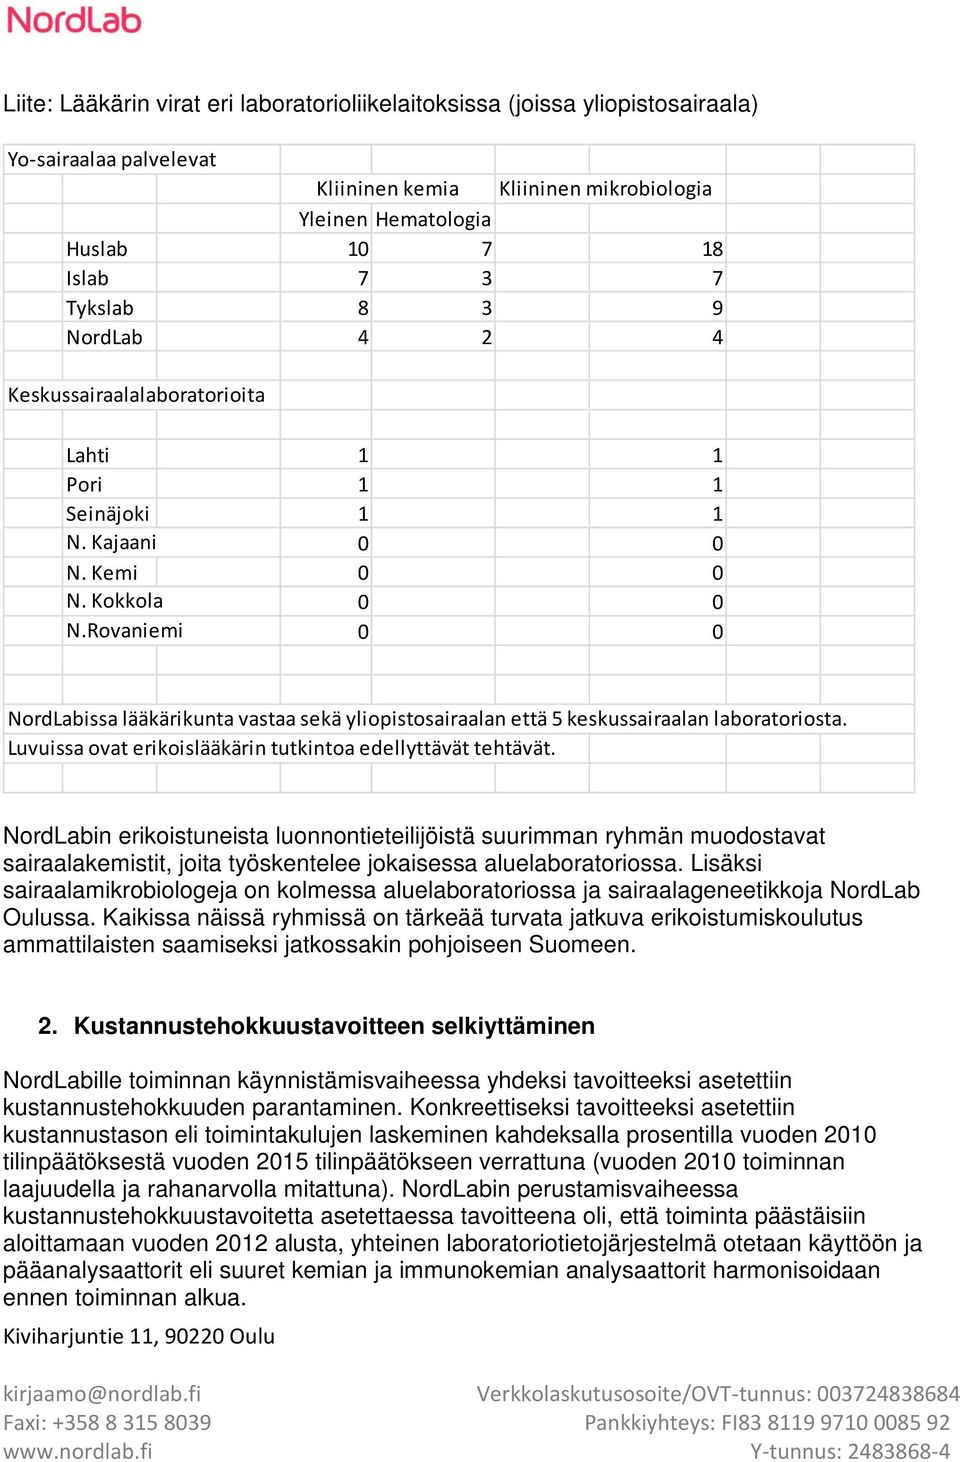 Rovaniemi NordLabissa lääkärikunta vastaa sekä yliopistosairaalan että 5 keskussairaalan laboratoriosta. Luvuissa ovat erikoislääkärin tutkintoa edellyttävät tehtävät.